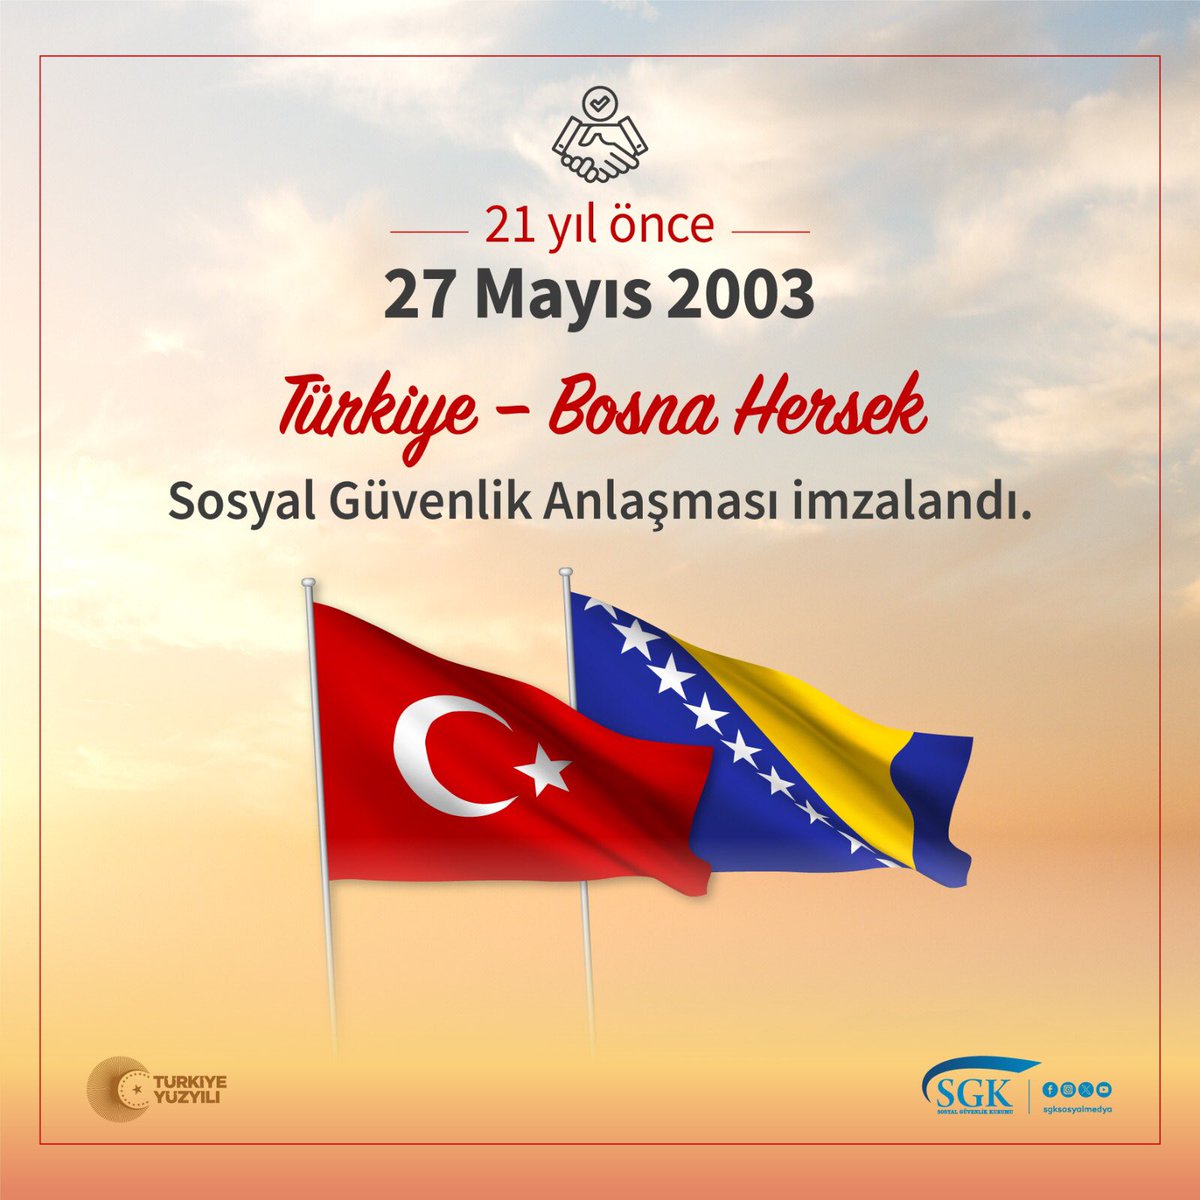 Sosyal Güvenlik Anlaşması ile #Türkiye ve #BosnaHersek vatandaşlarının #sosyalgüvenlik hakları 21 yıldır güvence altında.